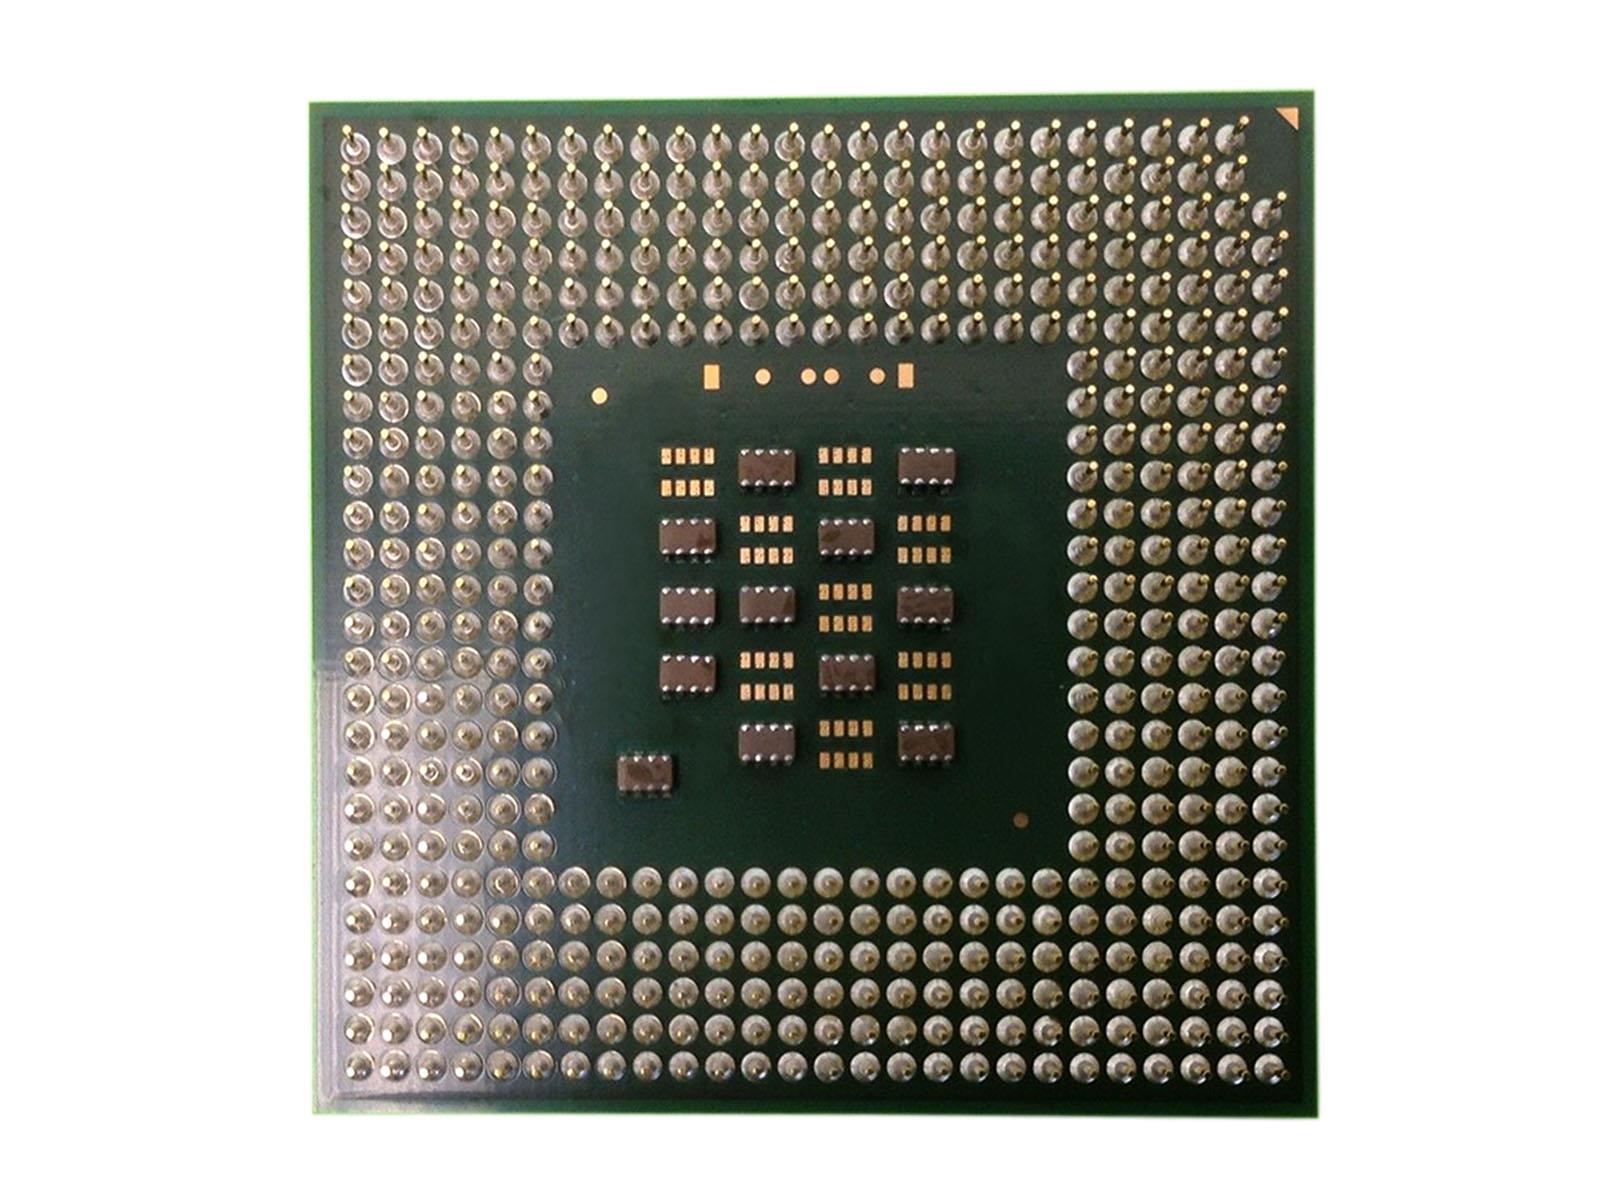 Intel Pentium P4 CPU